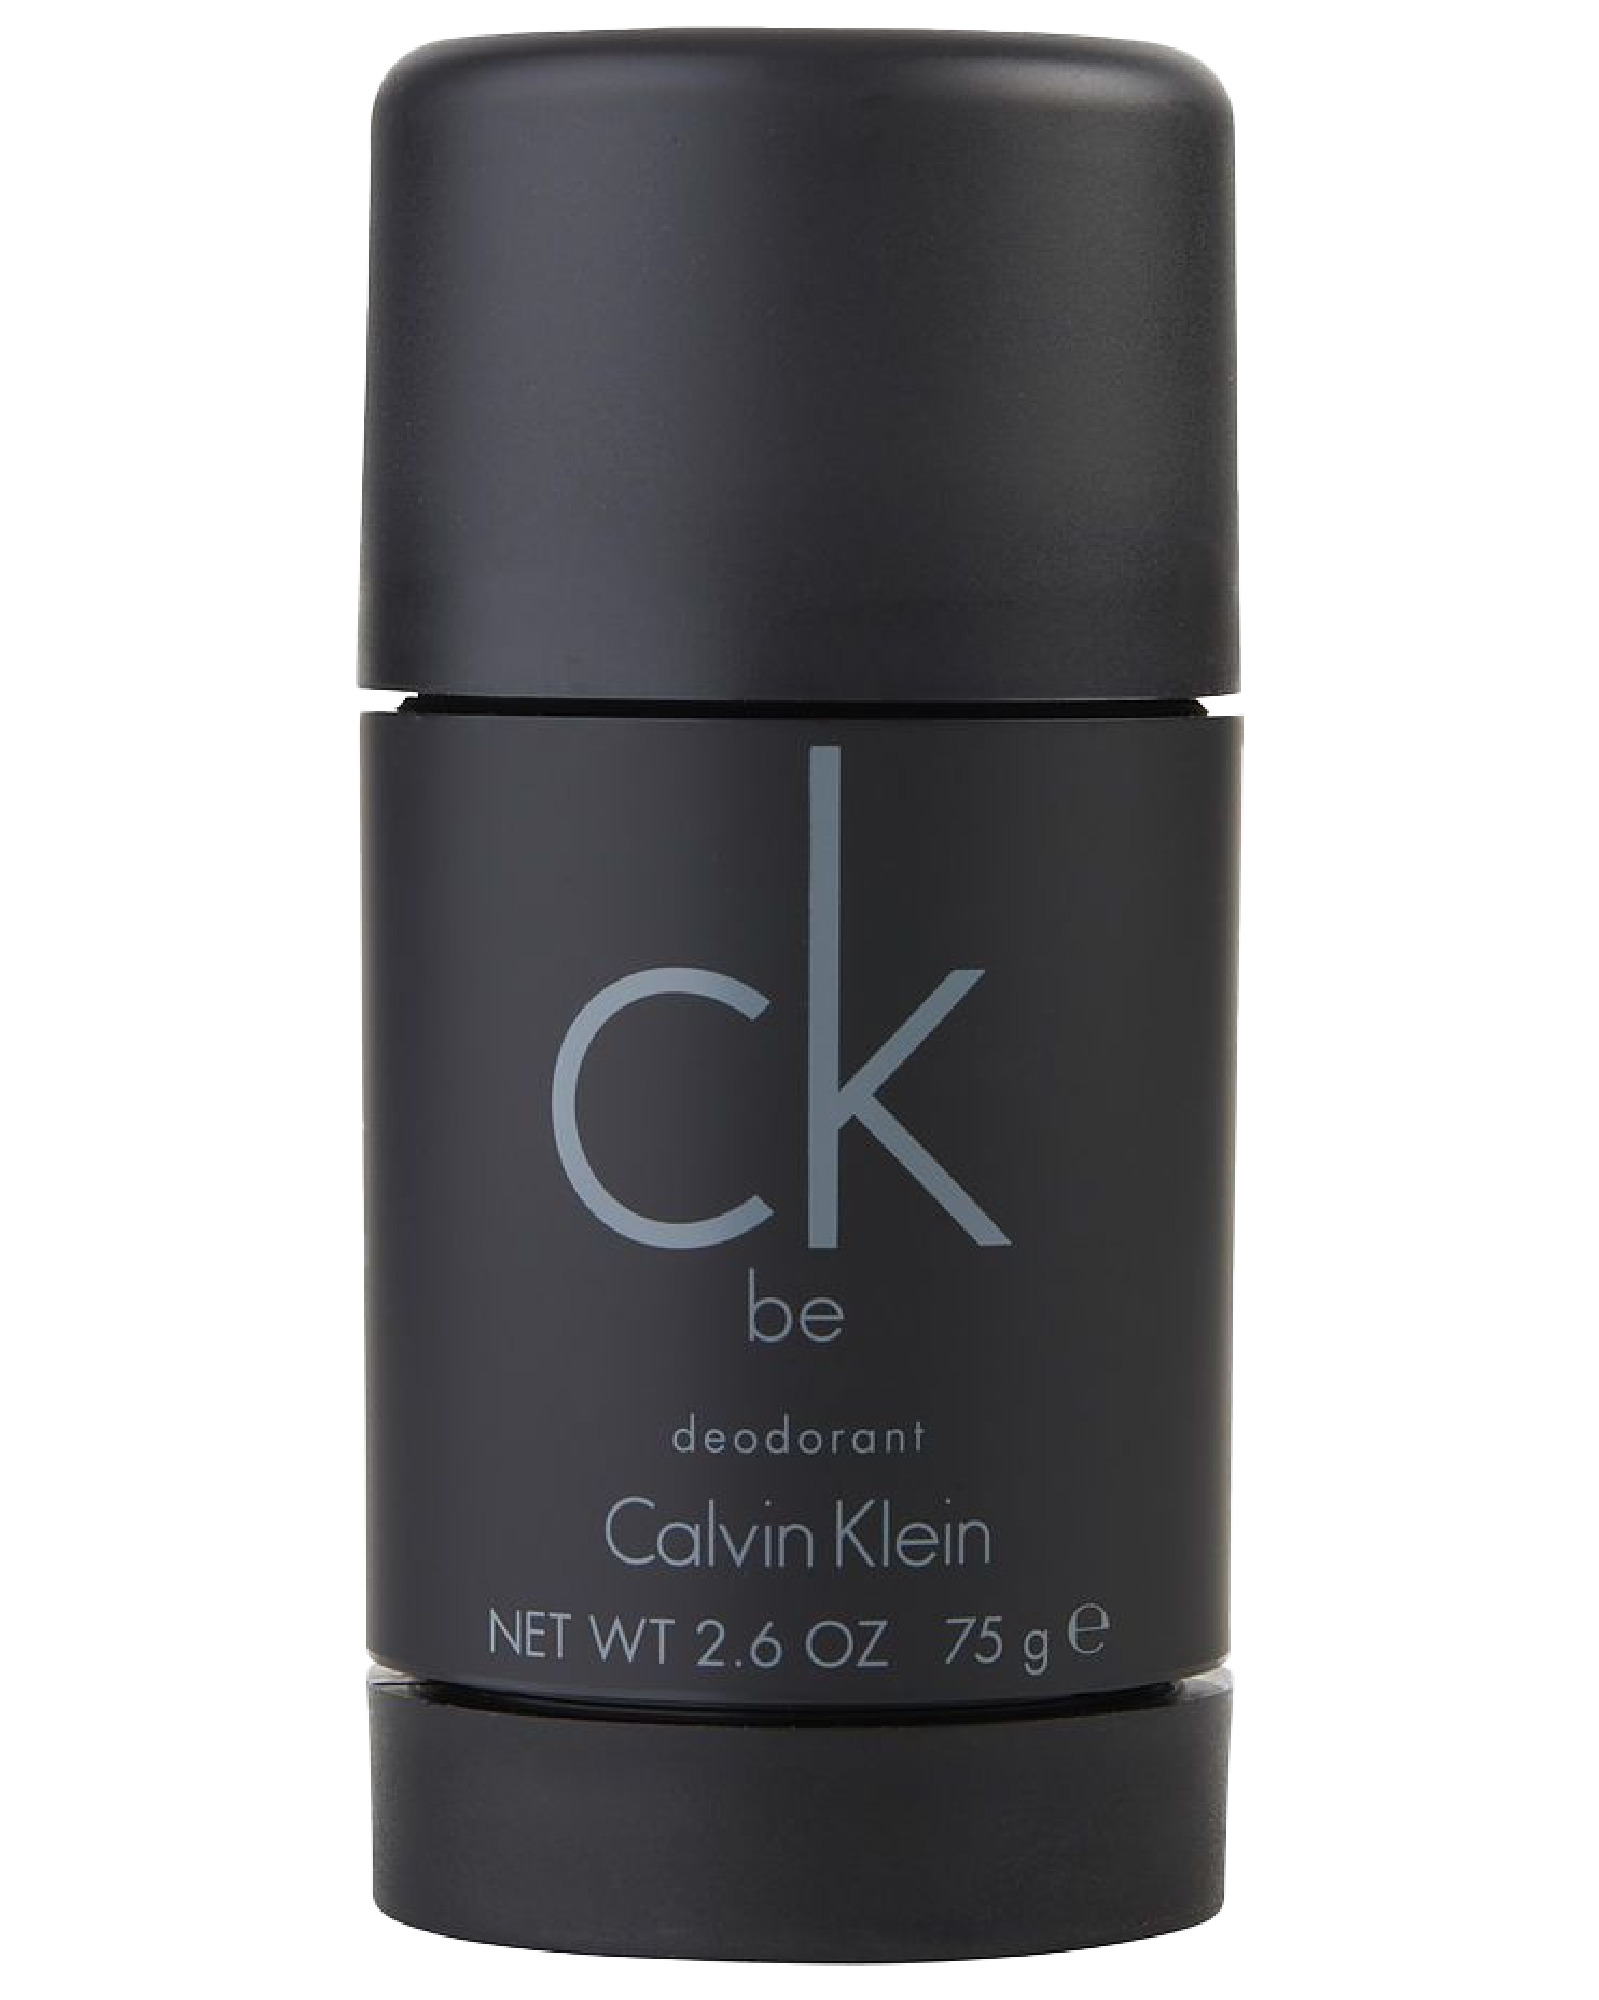 Calvin Klein CK Be deodorant stift 75 g - Apotek 1